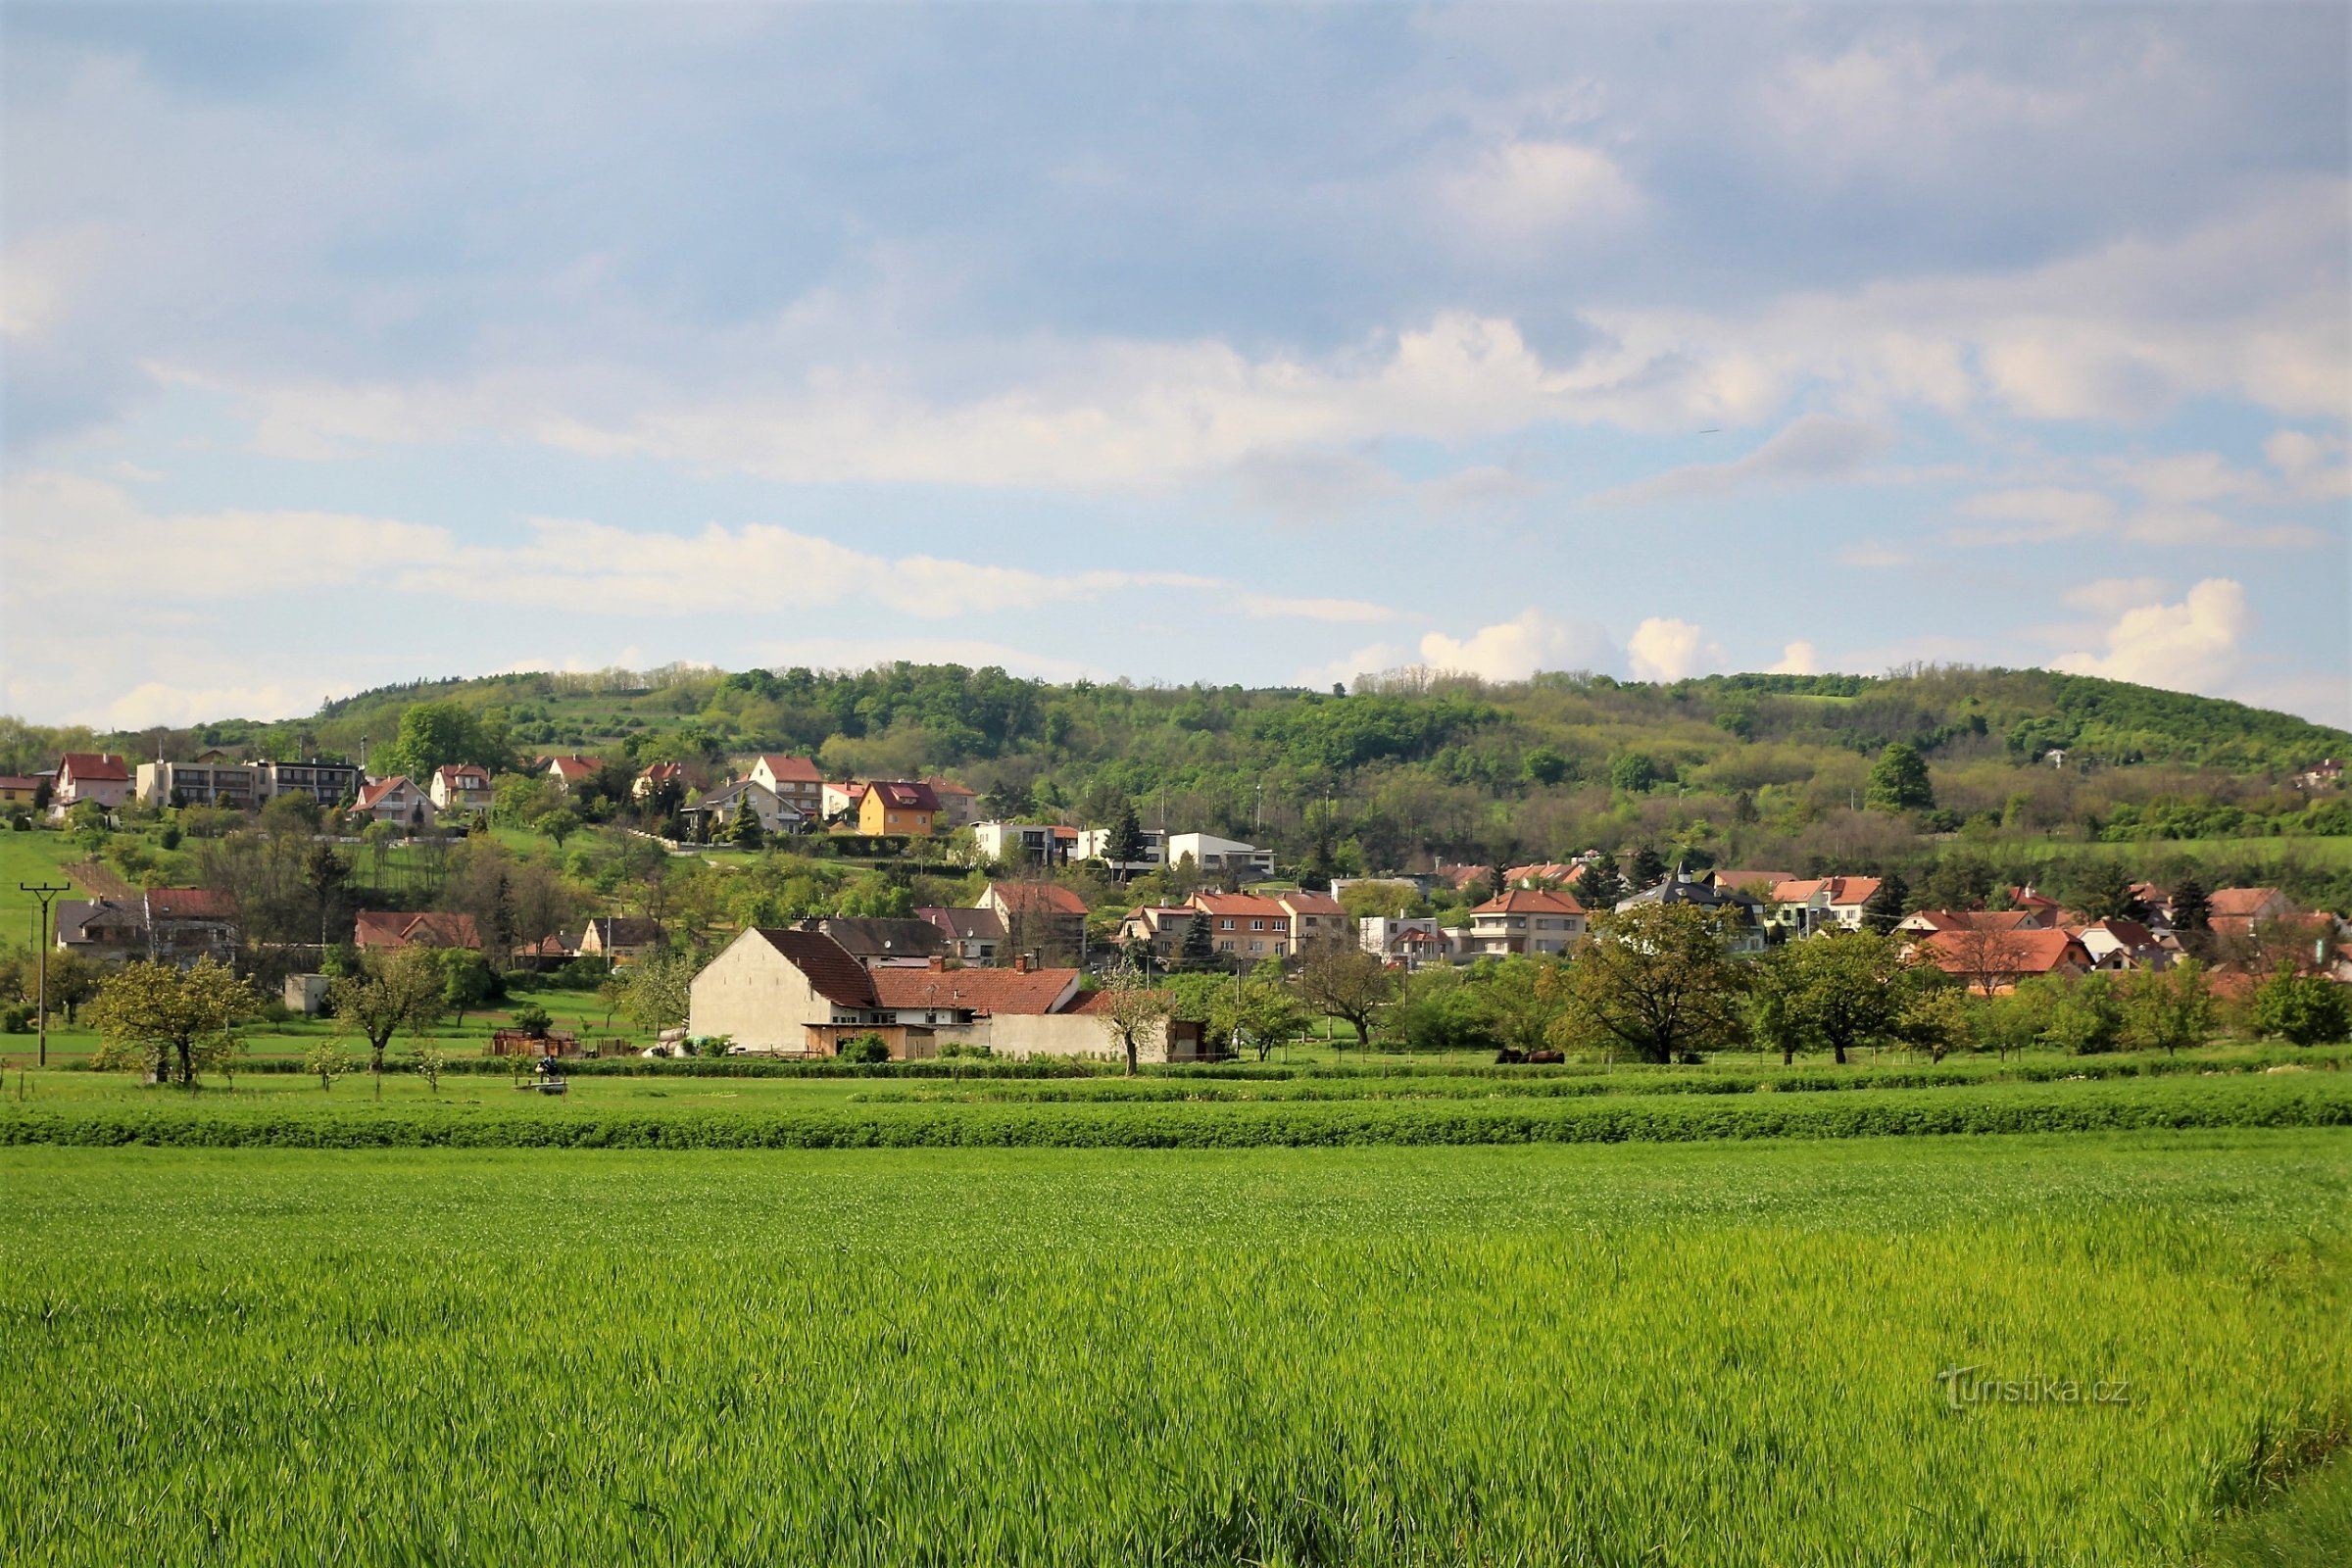 Південні схили сягають до села Moravské Bránice